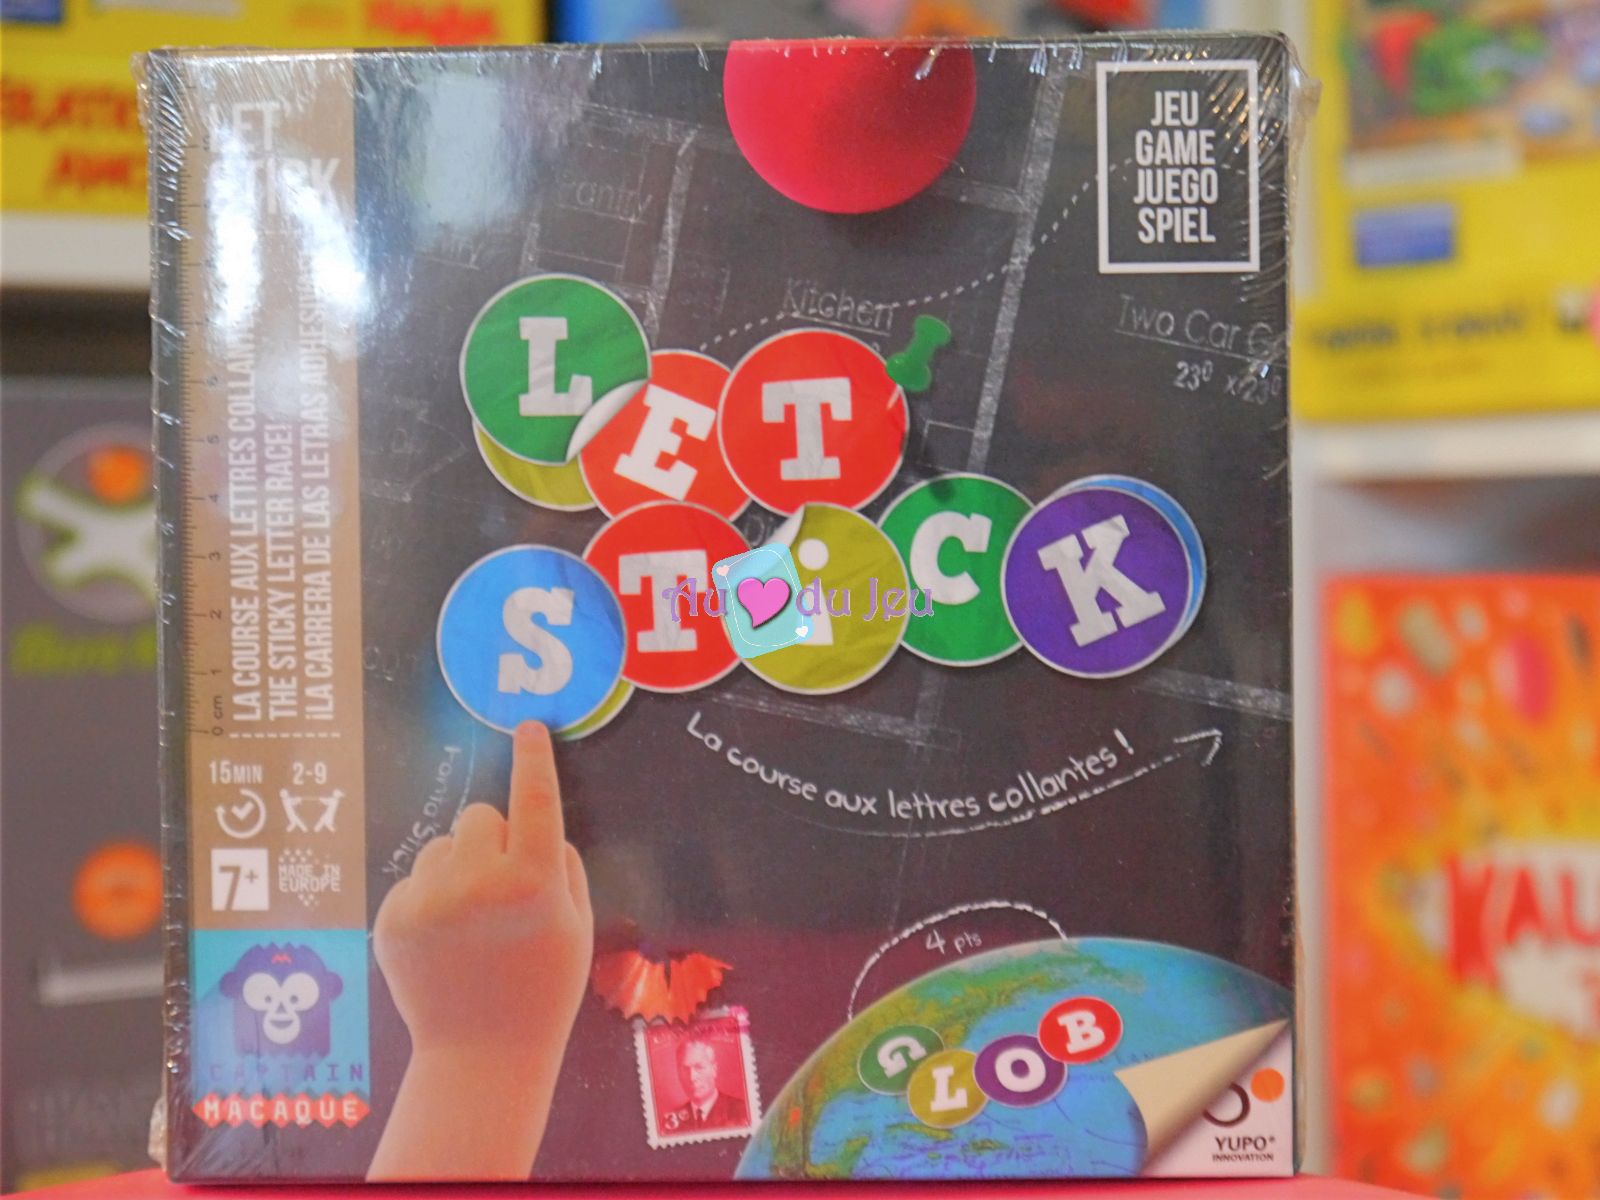 Let's Stick Blackrock Games